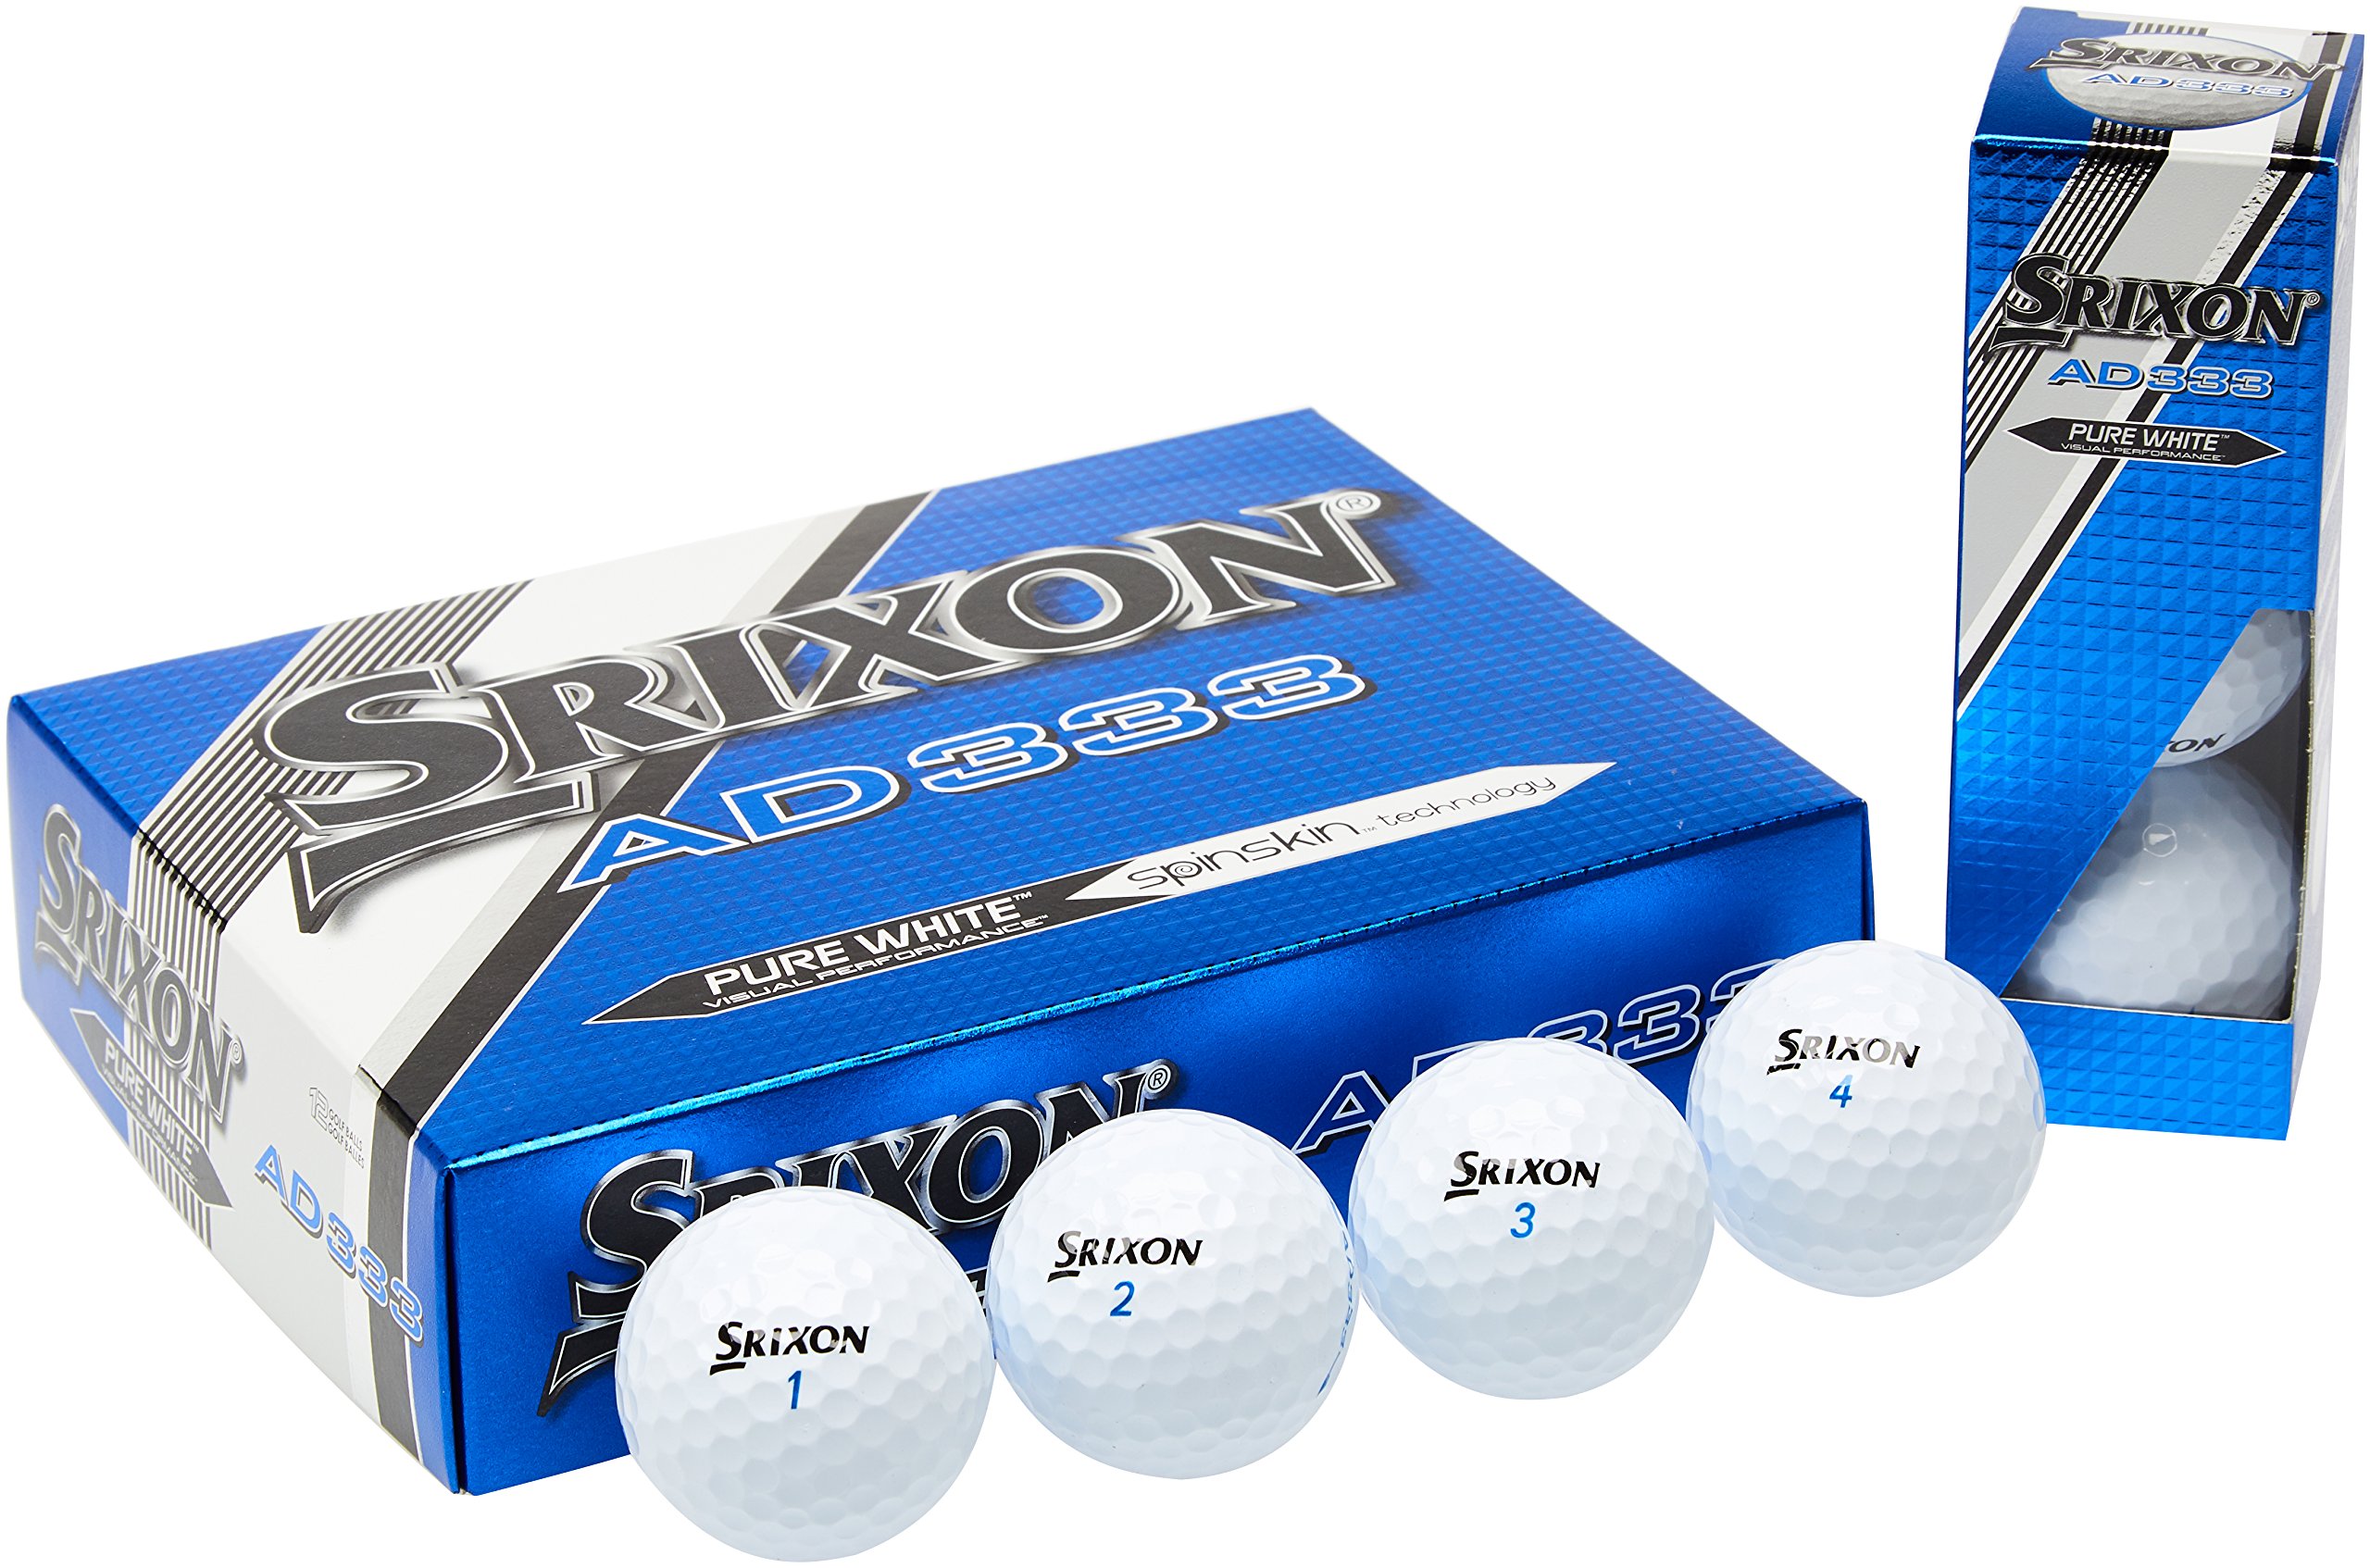 Promo Srixon Ad333 Boule de Golf Homme WzSTDB9Wq stylé 